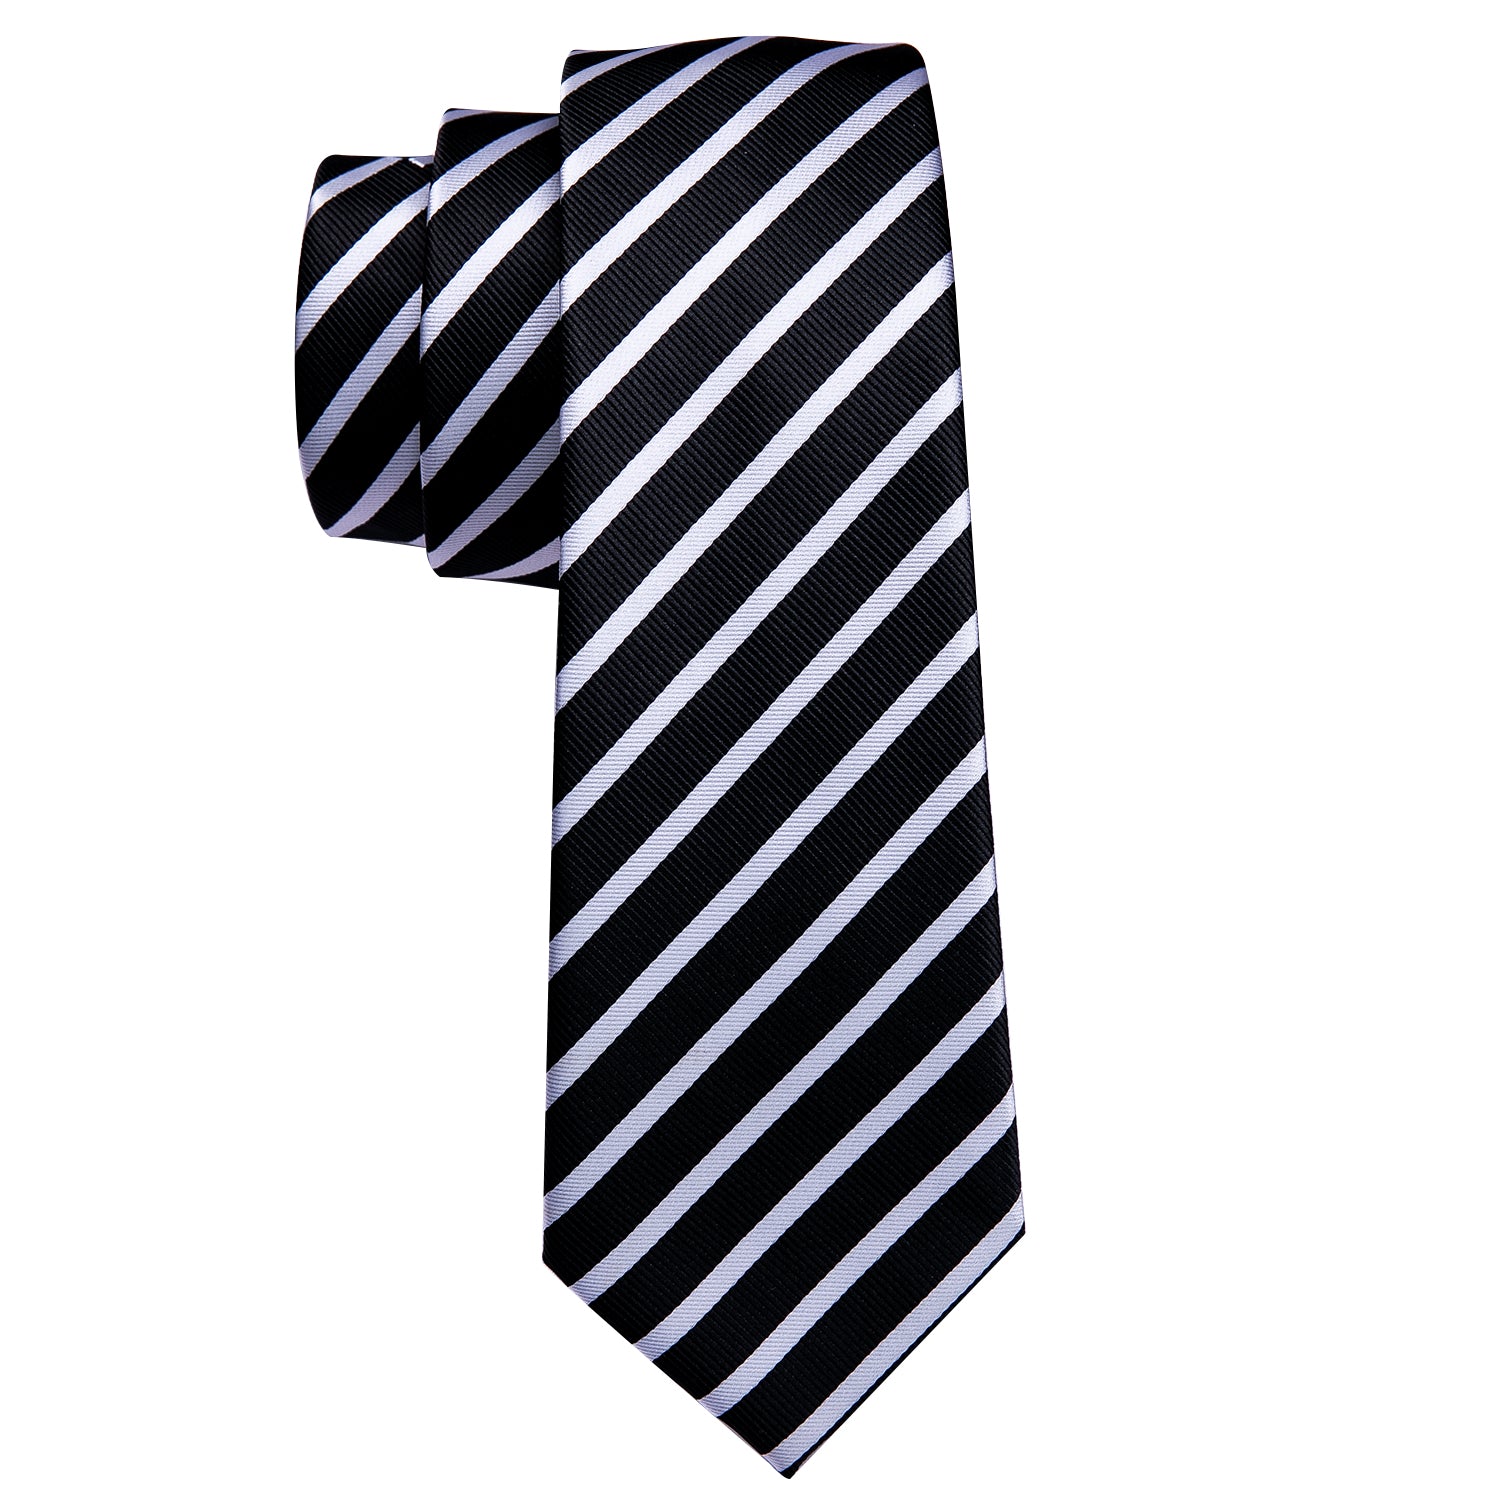 Black White Striped Silk Tie Hanky Cufflinks Set